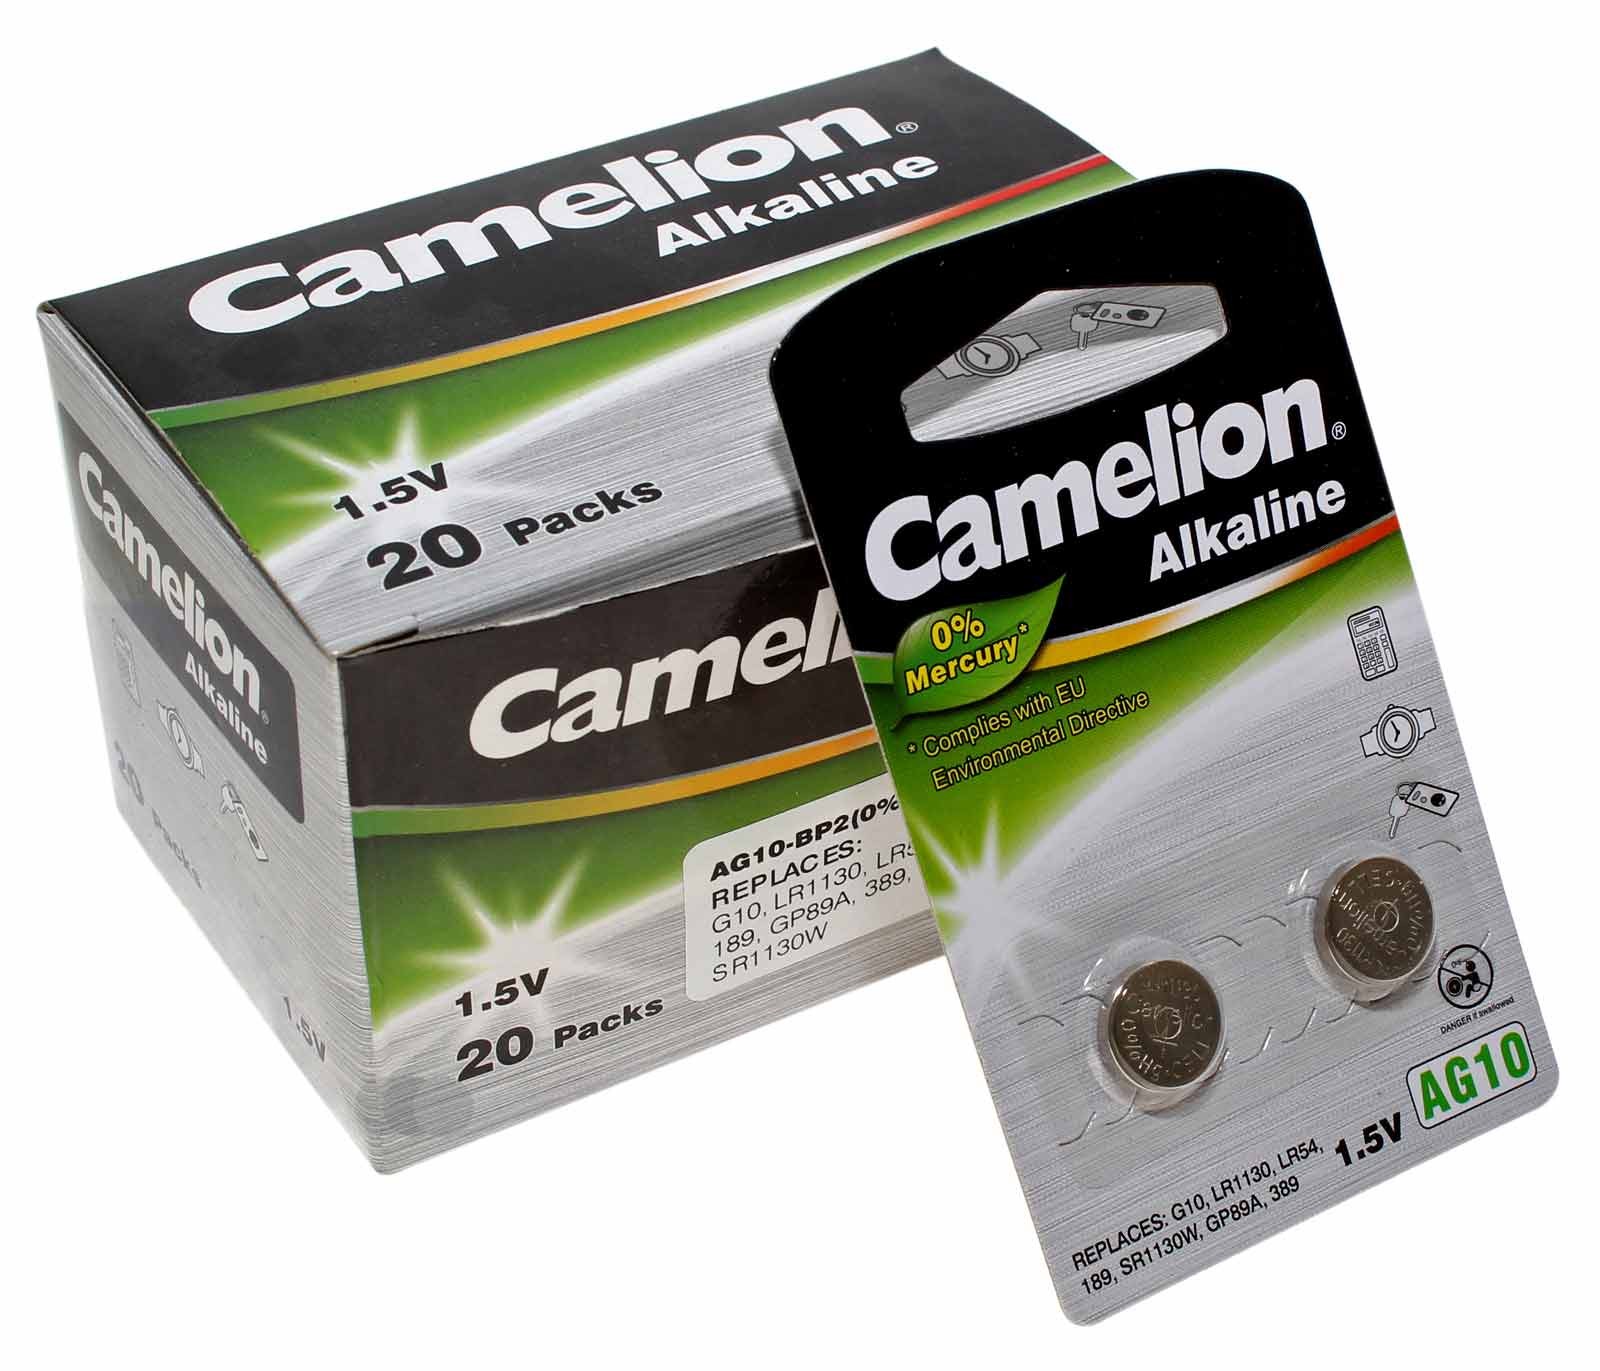 20x 2er Pack (40 Stk.) Camelion AG10 Alkaline Knopfzelle Batterie 1,5V, 80mAh, AG10-BP2, (0% Hg)